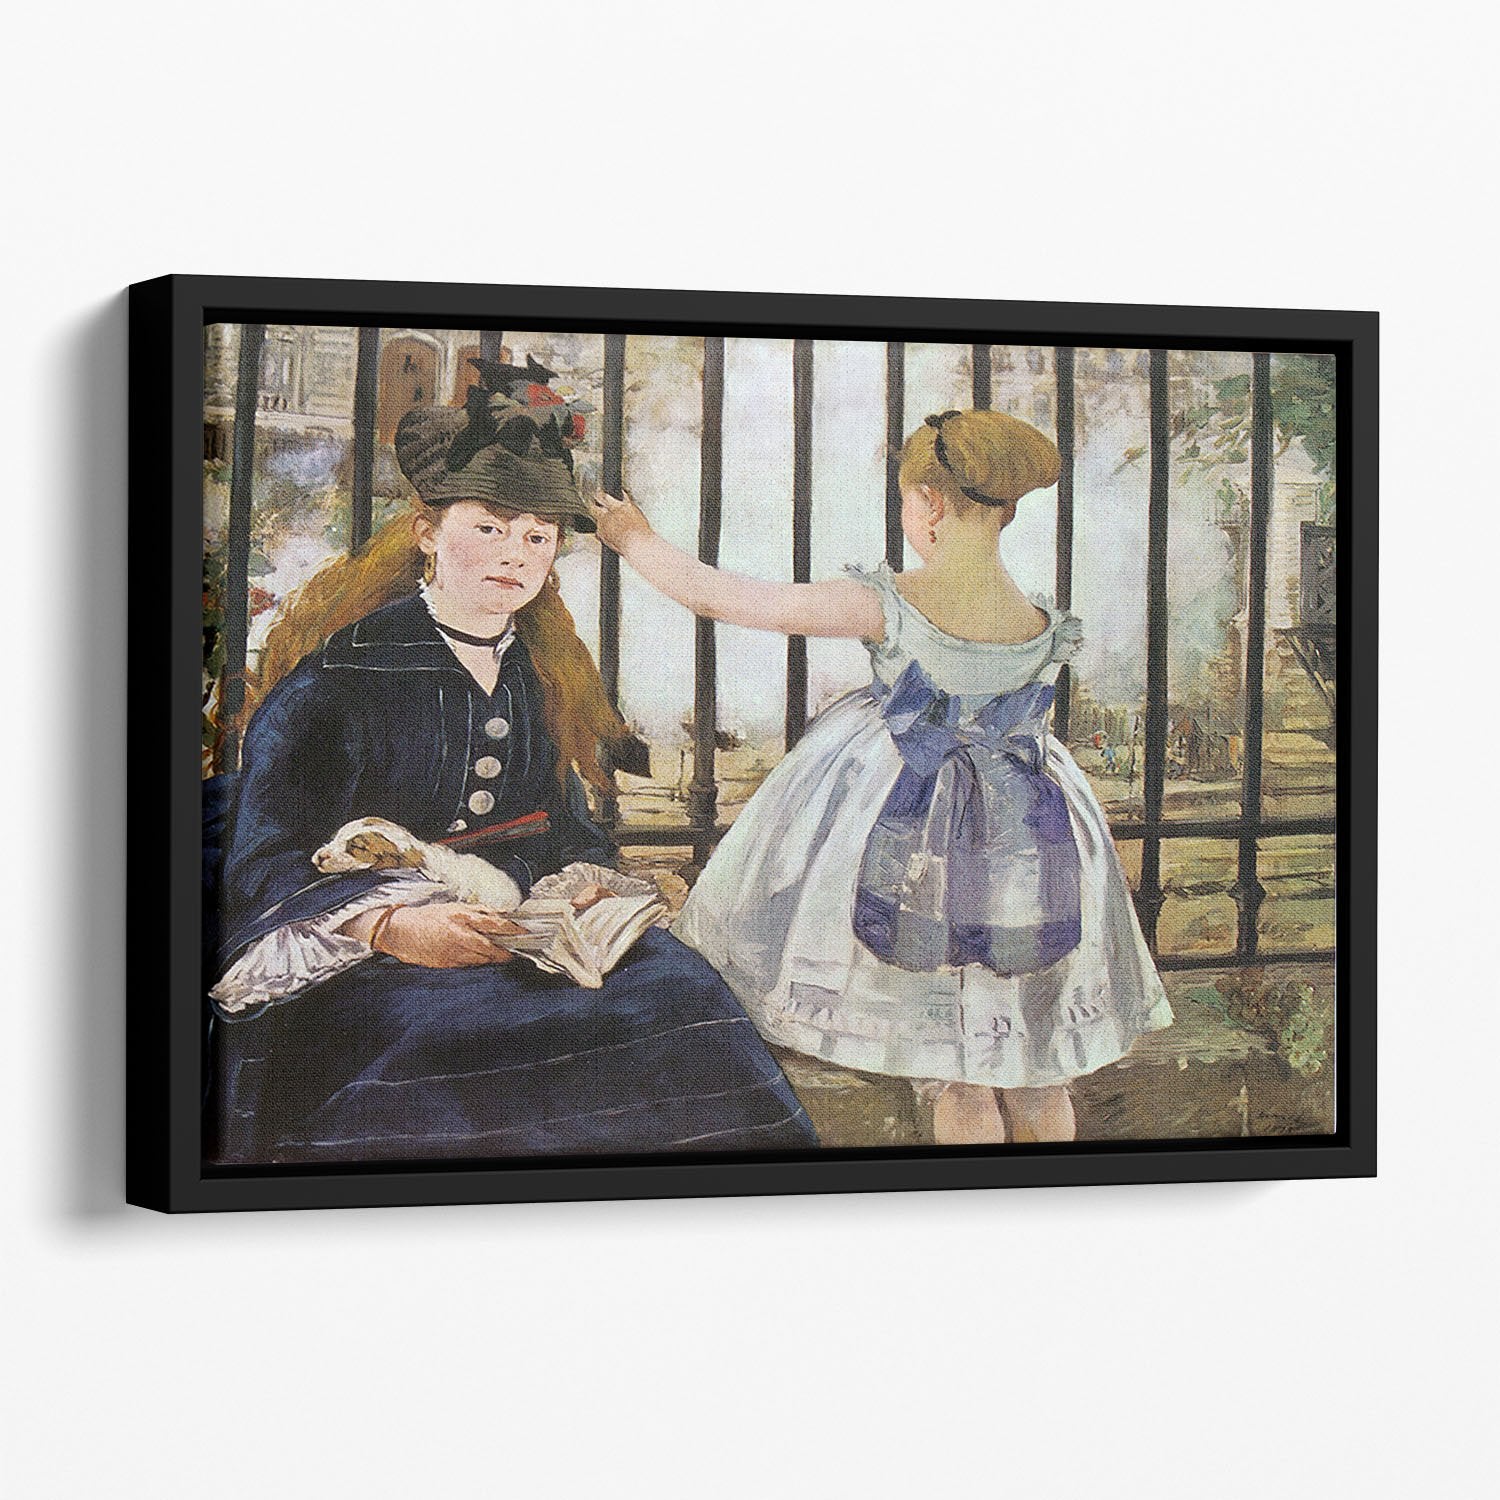 Le Chemin de fer 1873 by Manet Floating Framed Canvas